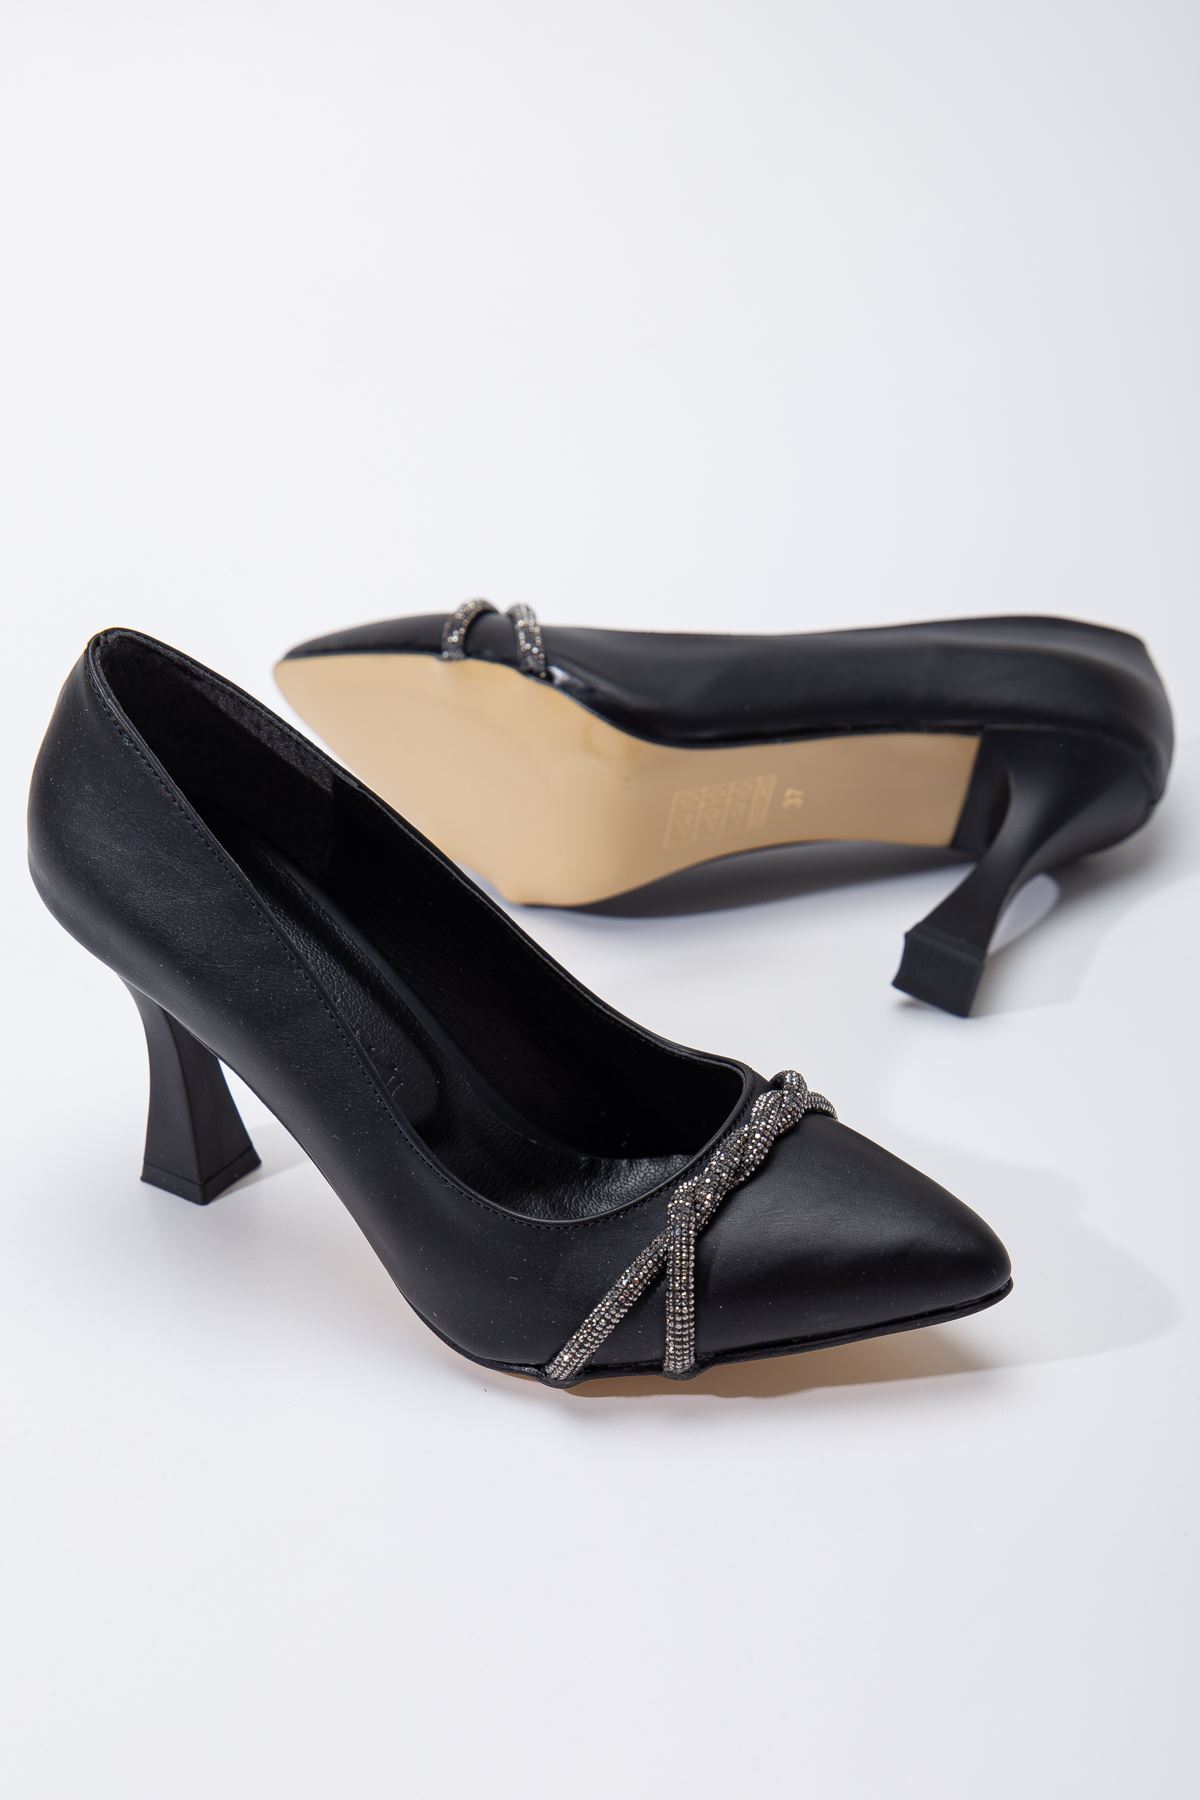 Berly Topuklu Ayakkabı Siyah